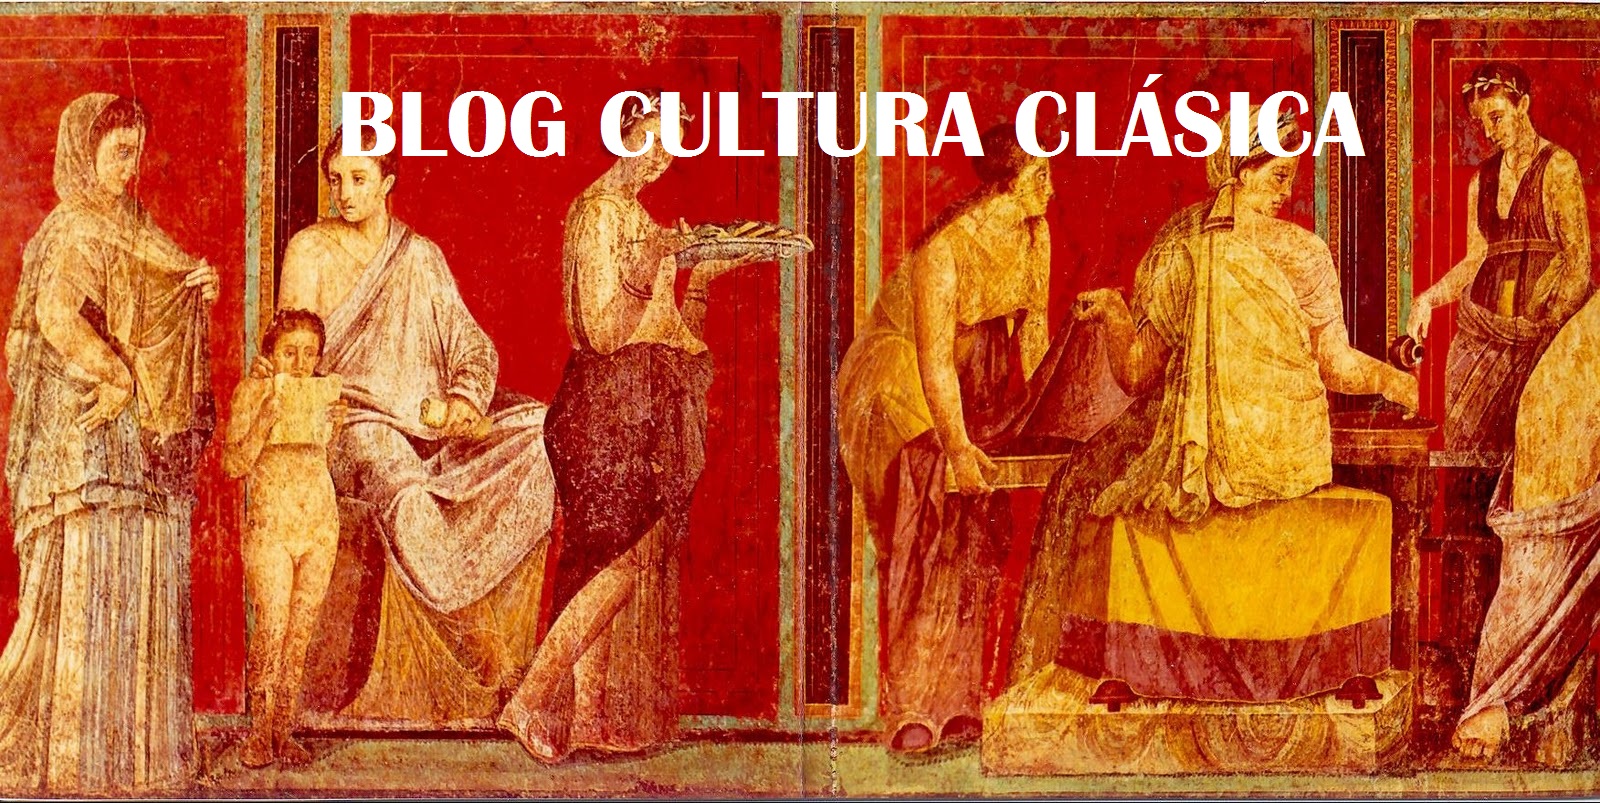 Blog CULTURA CLASICA